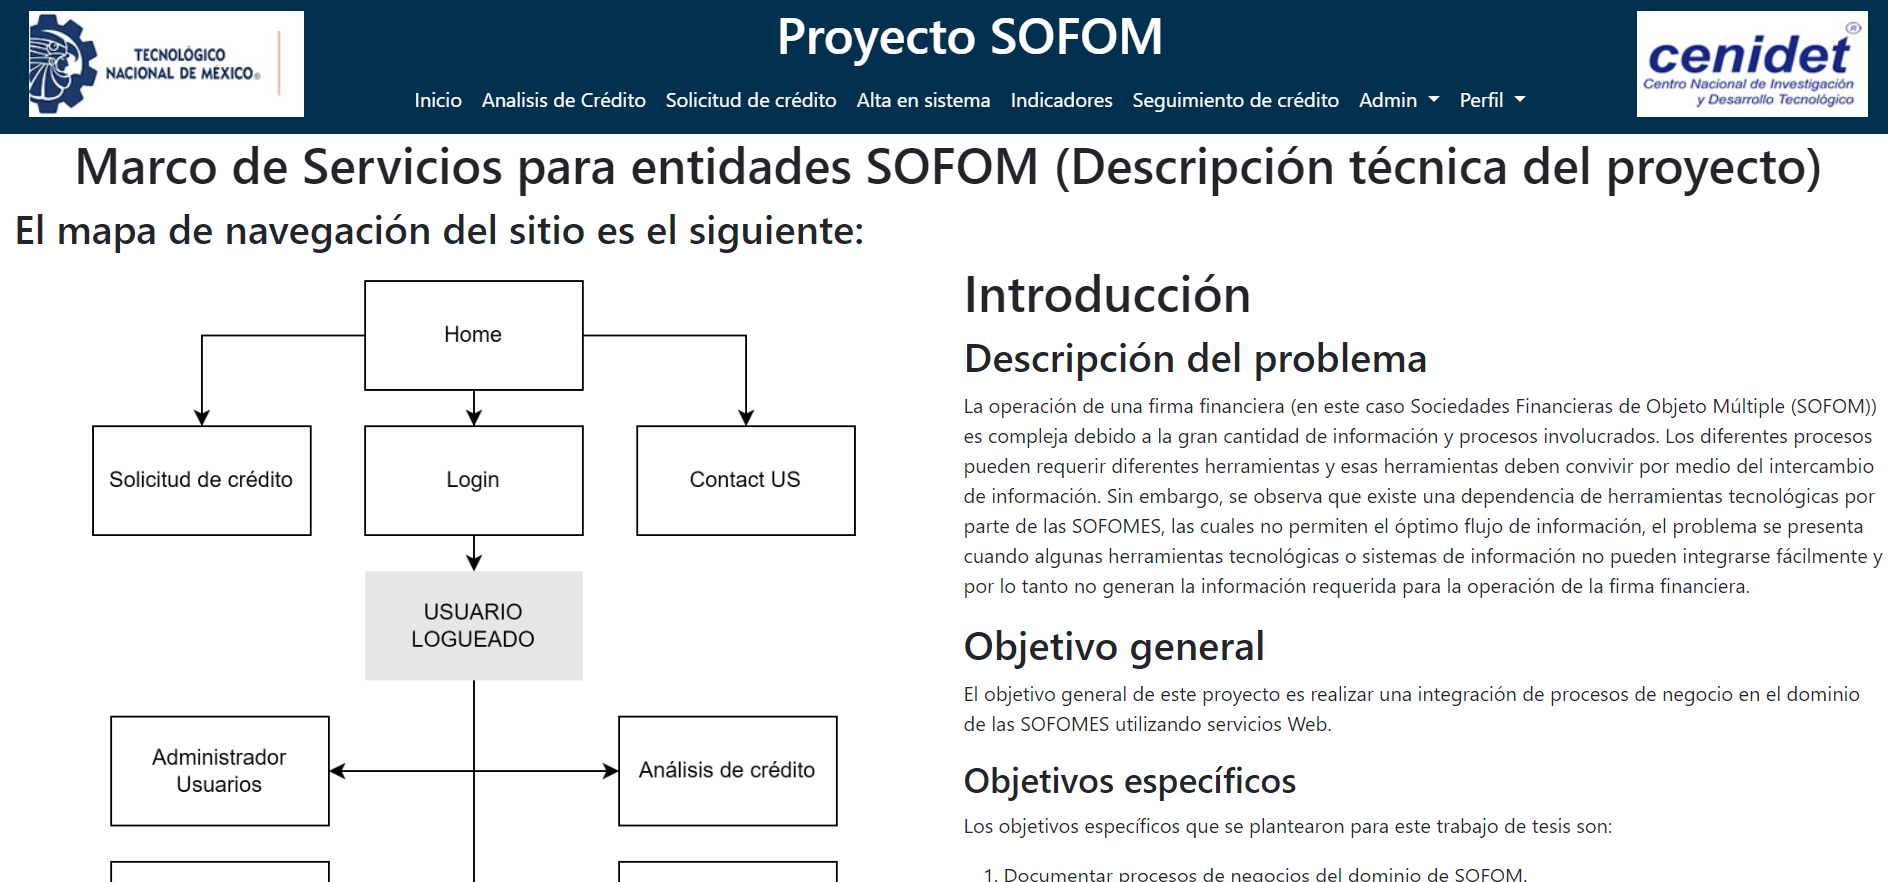 Marco de Servicios para entidades SOFOM (Financiera Mexico))